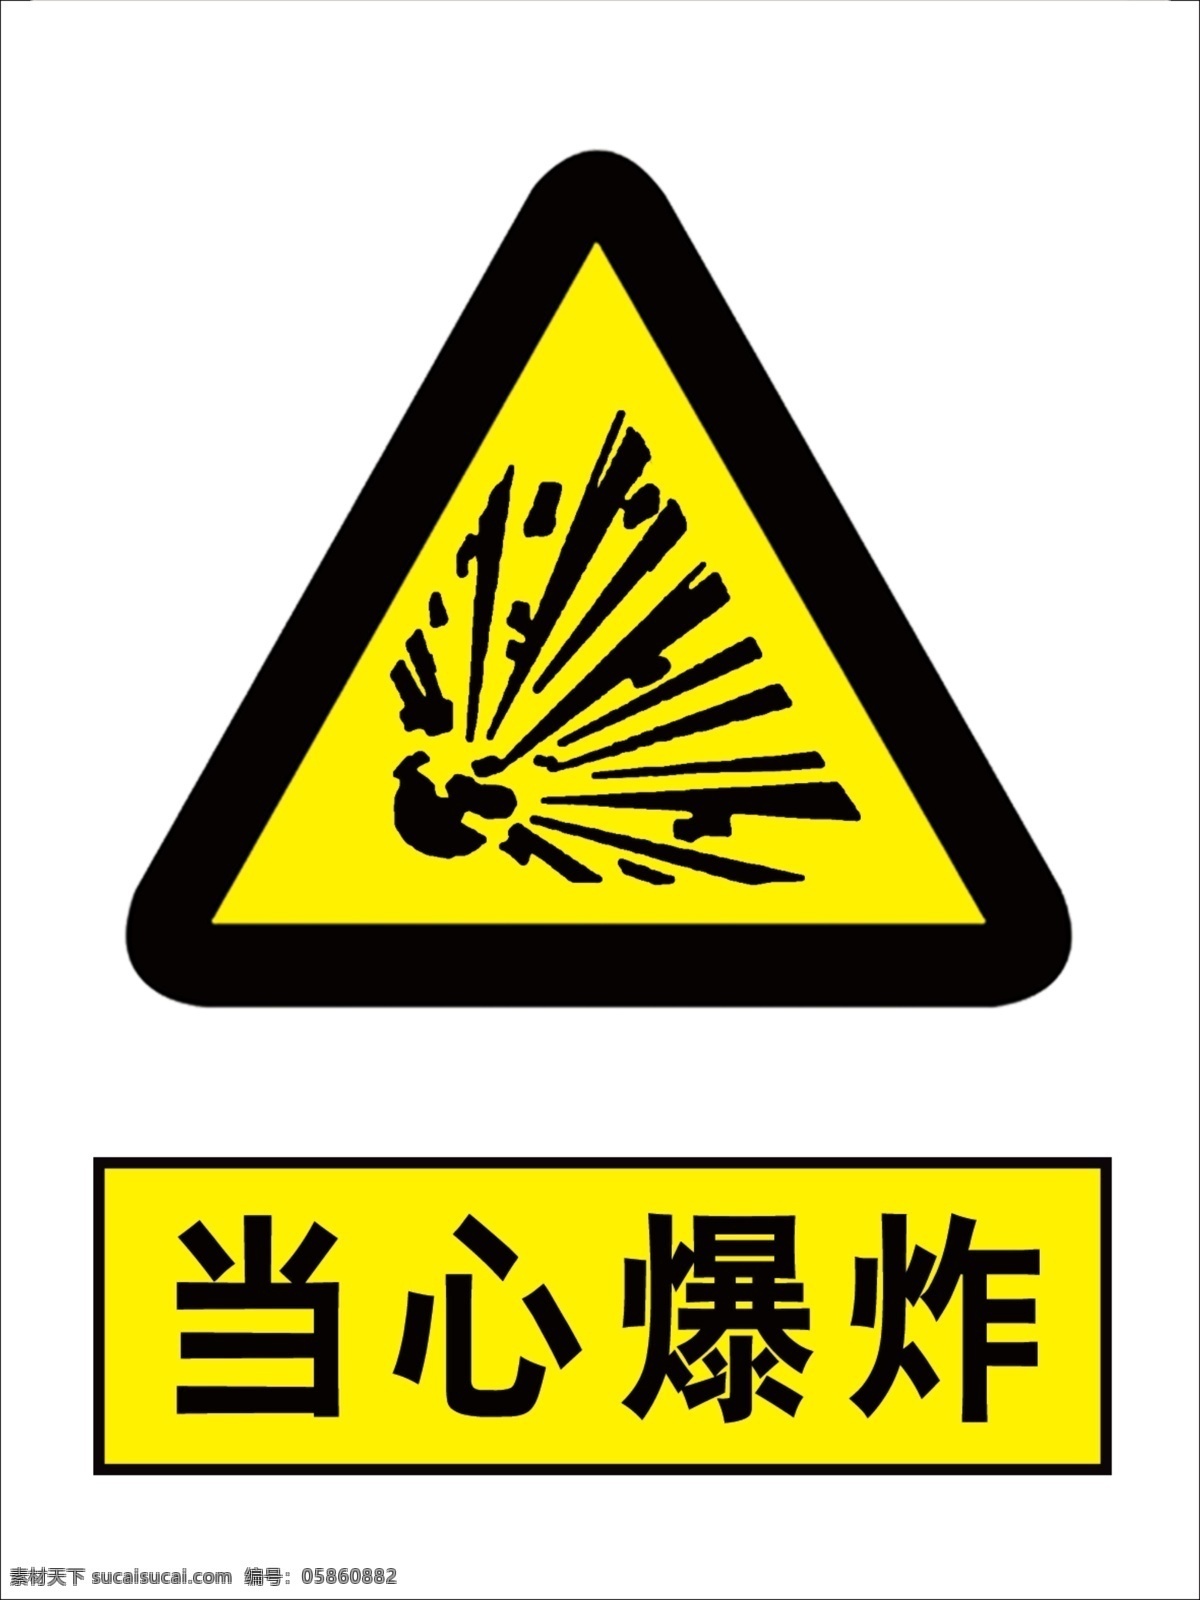 当心爆炸图片 爆炸危险 爆炸 当心爆炸 国标 安全标识 标志图标 公共标识标志